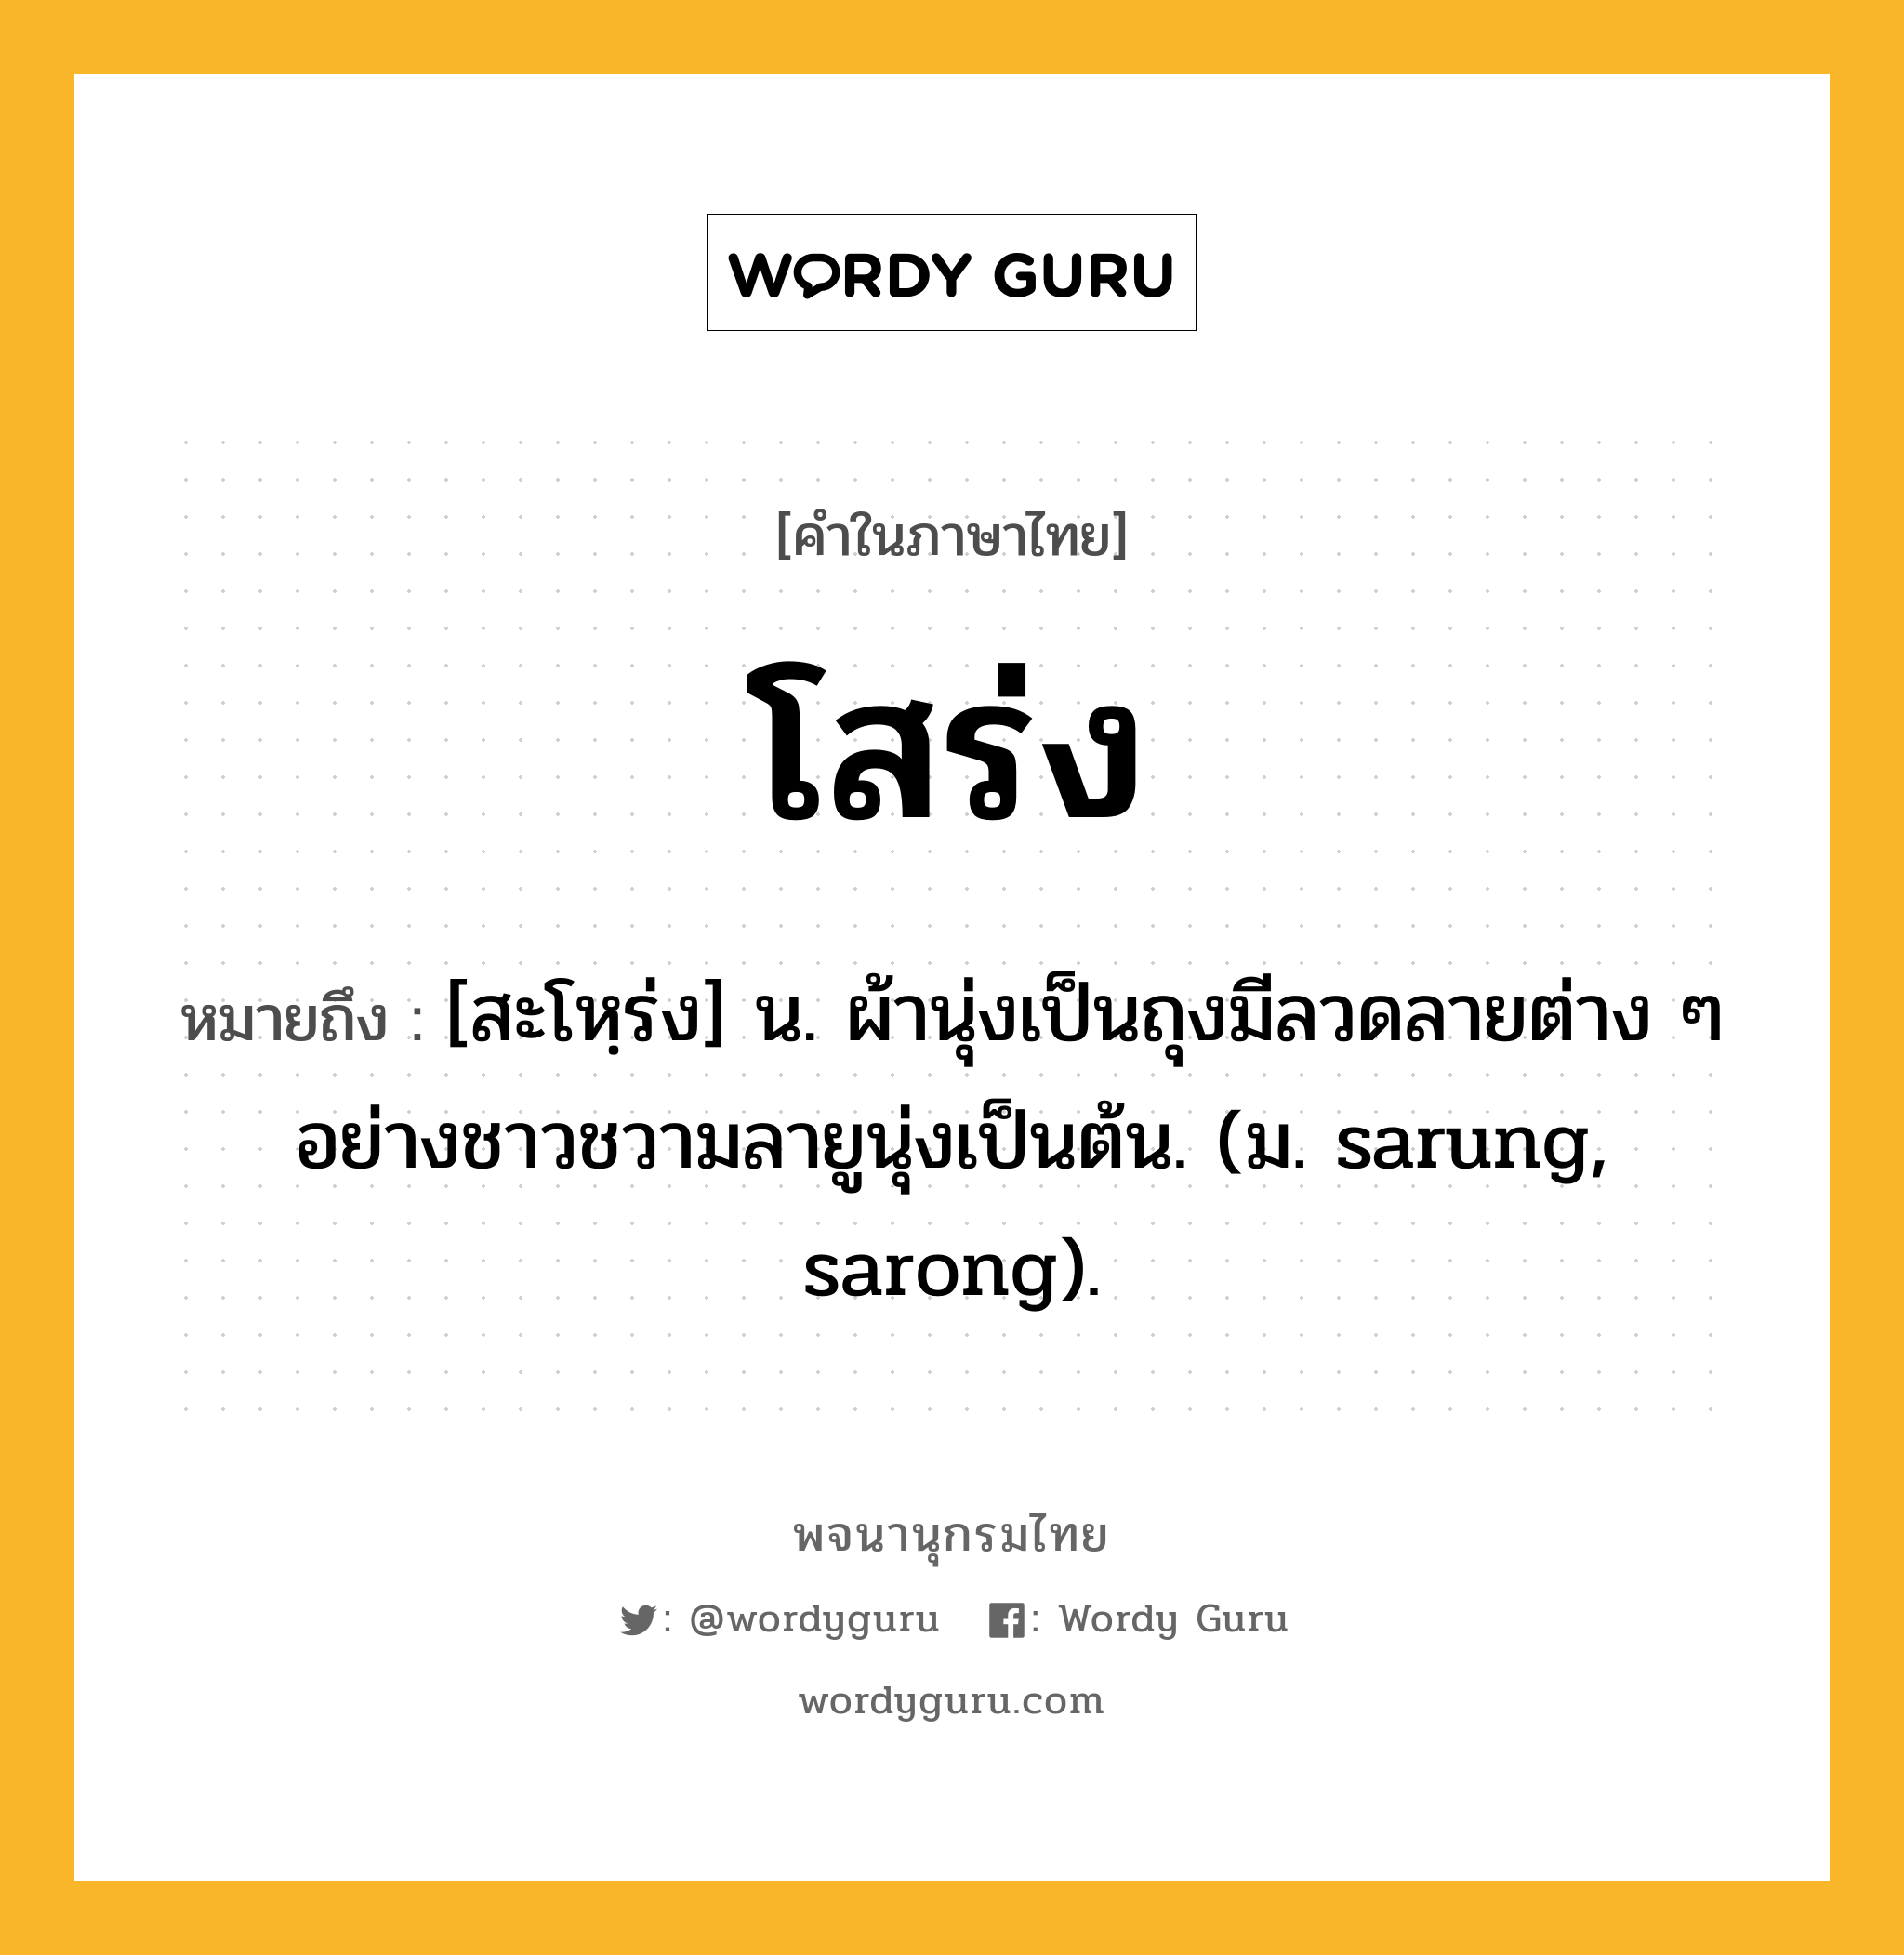 โสร่ง ความหมาย หมายถึงอะไร?, คำในภาษาไทย โสร่ง หมายถึง [สะโหฺร่ง] น. ผ้านุ่งเป็นถุงมีลวดลายต่าง ๆ อย่างชาวชวามลายูนุ่งเป็นต้น. (ม. sarung, sarong).